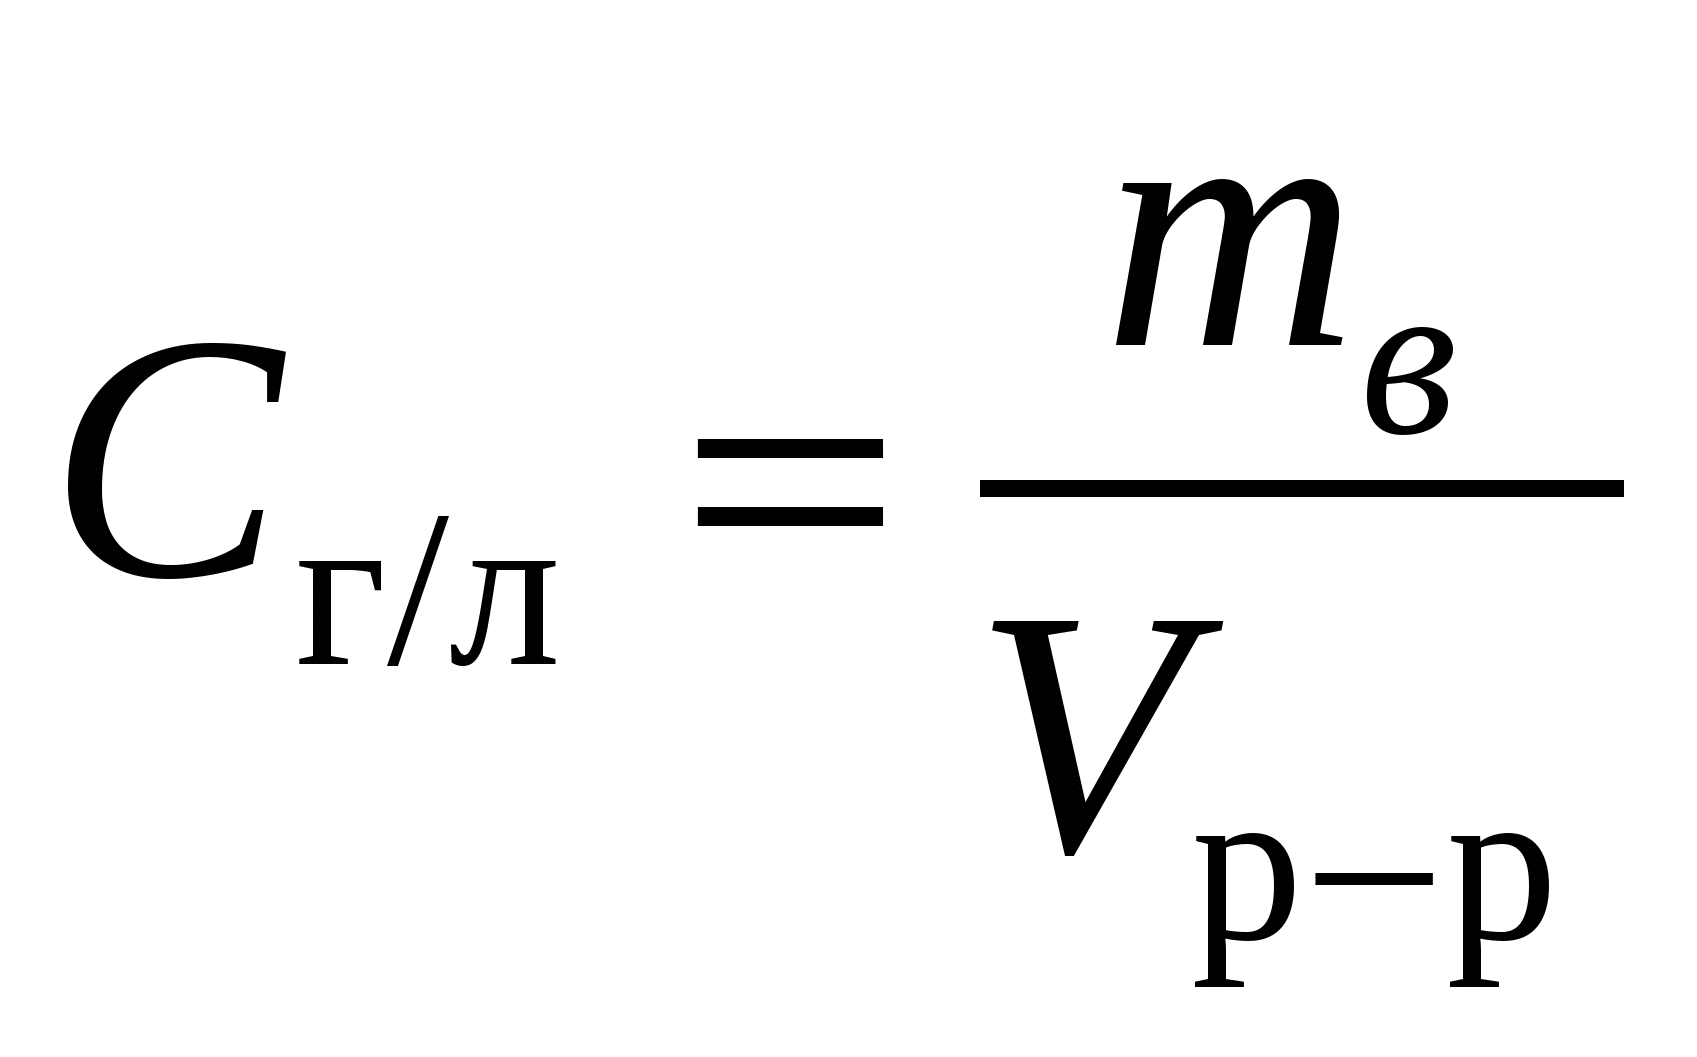 Основная формула растворов